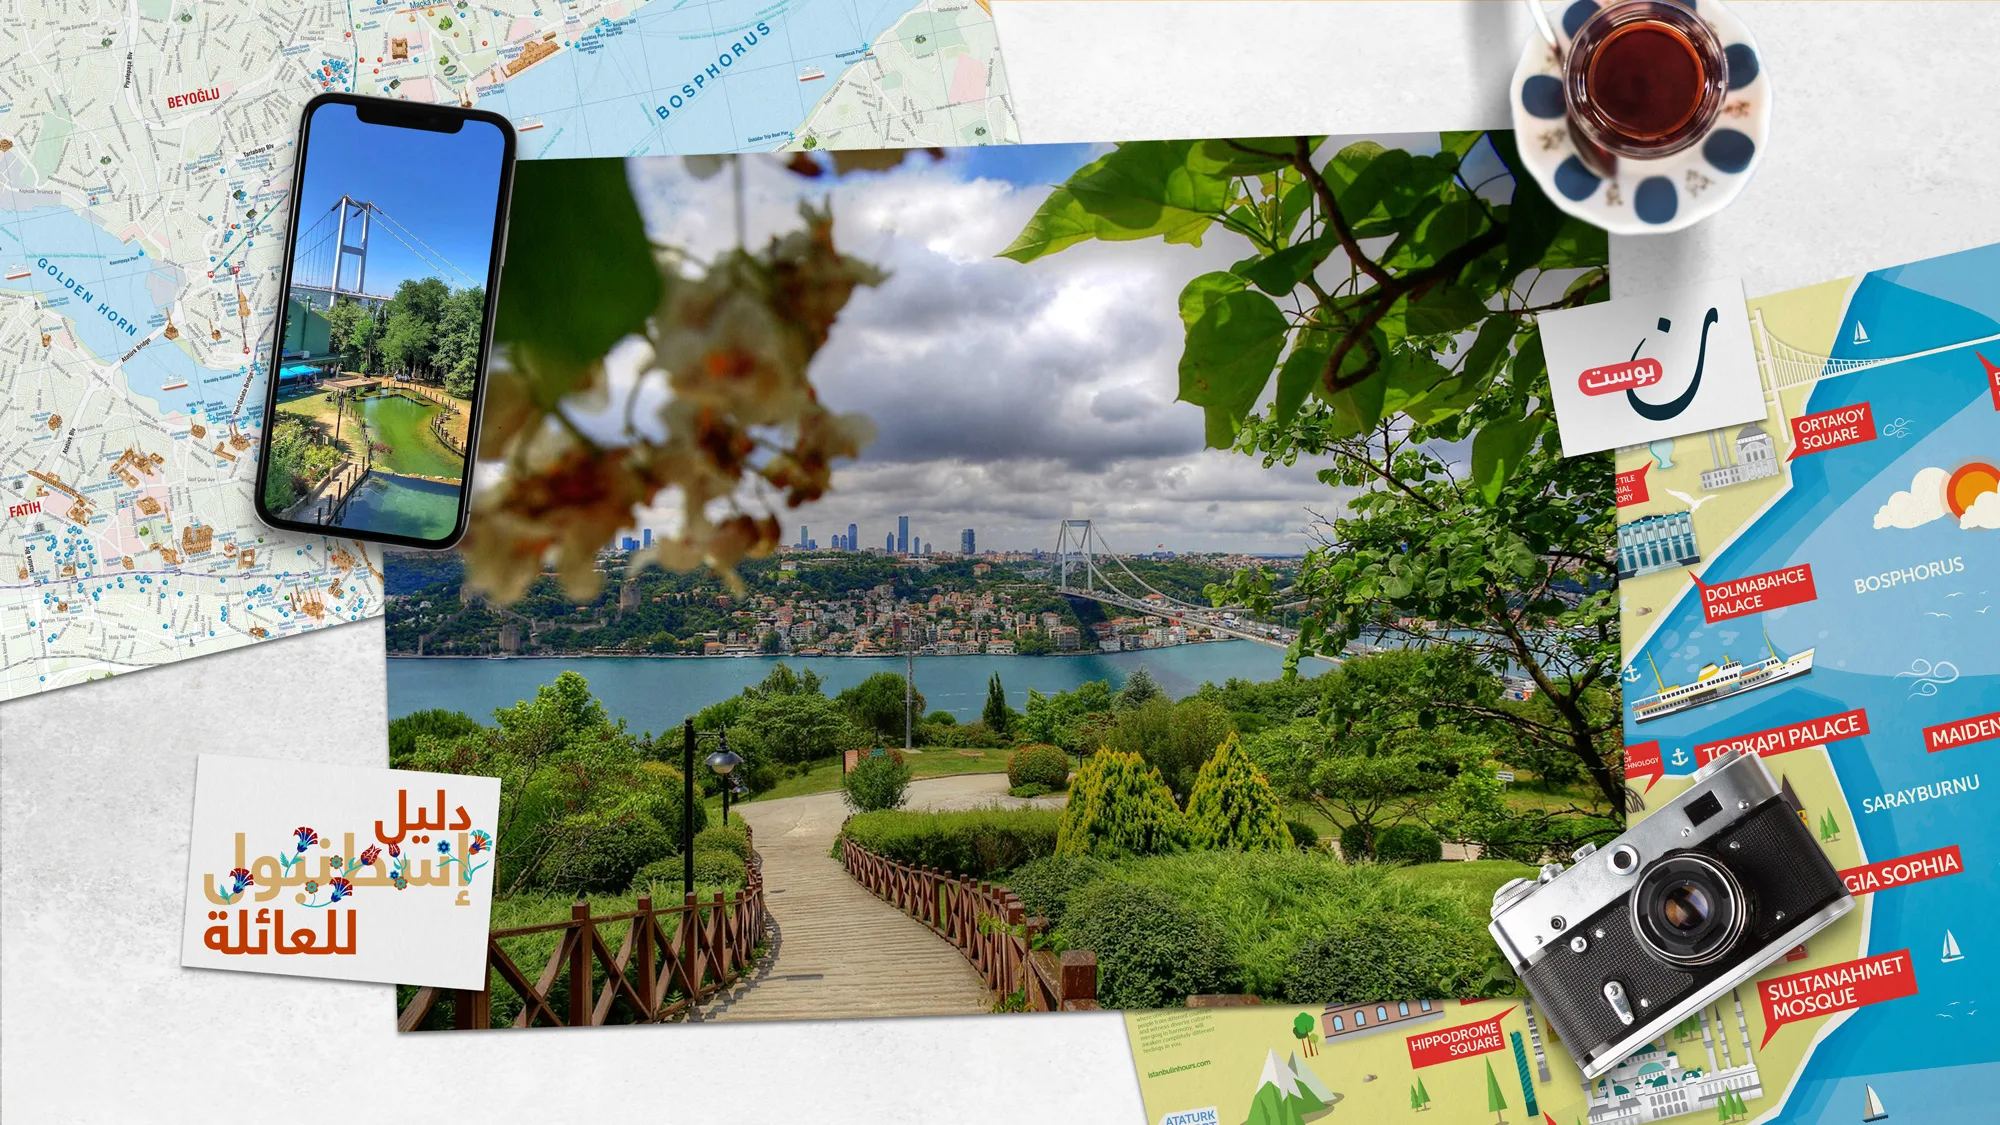 تعرف-على-أفضل-منتزهات-إسطنبول-لقضاء-يوم-ممتع-مع-العائلة